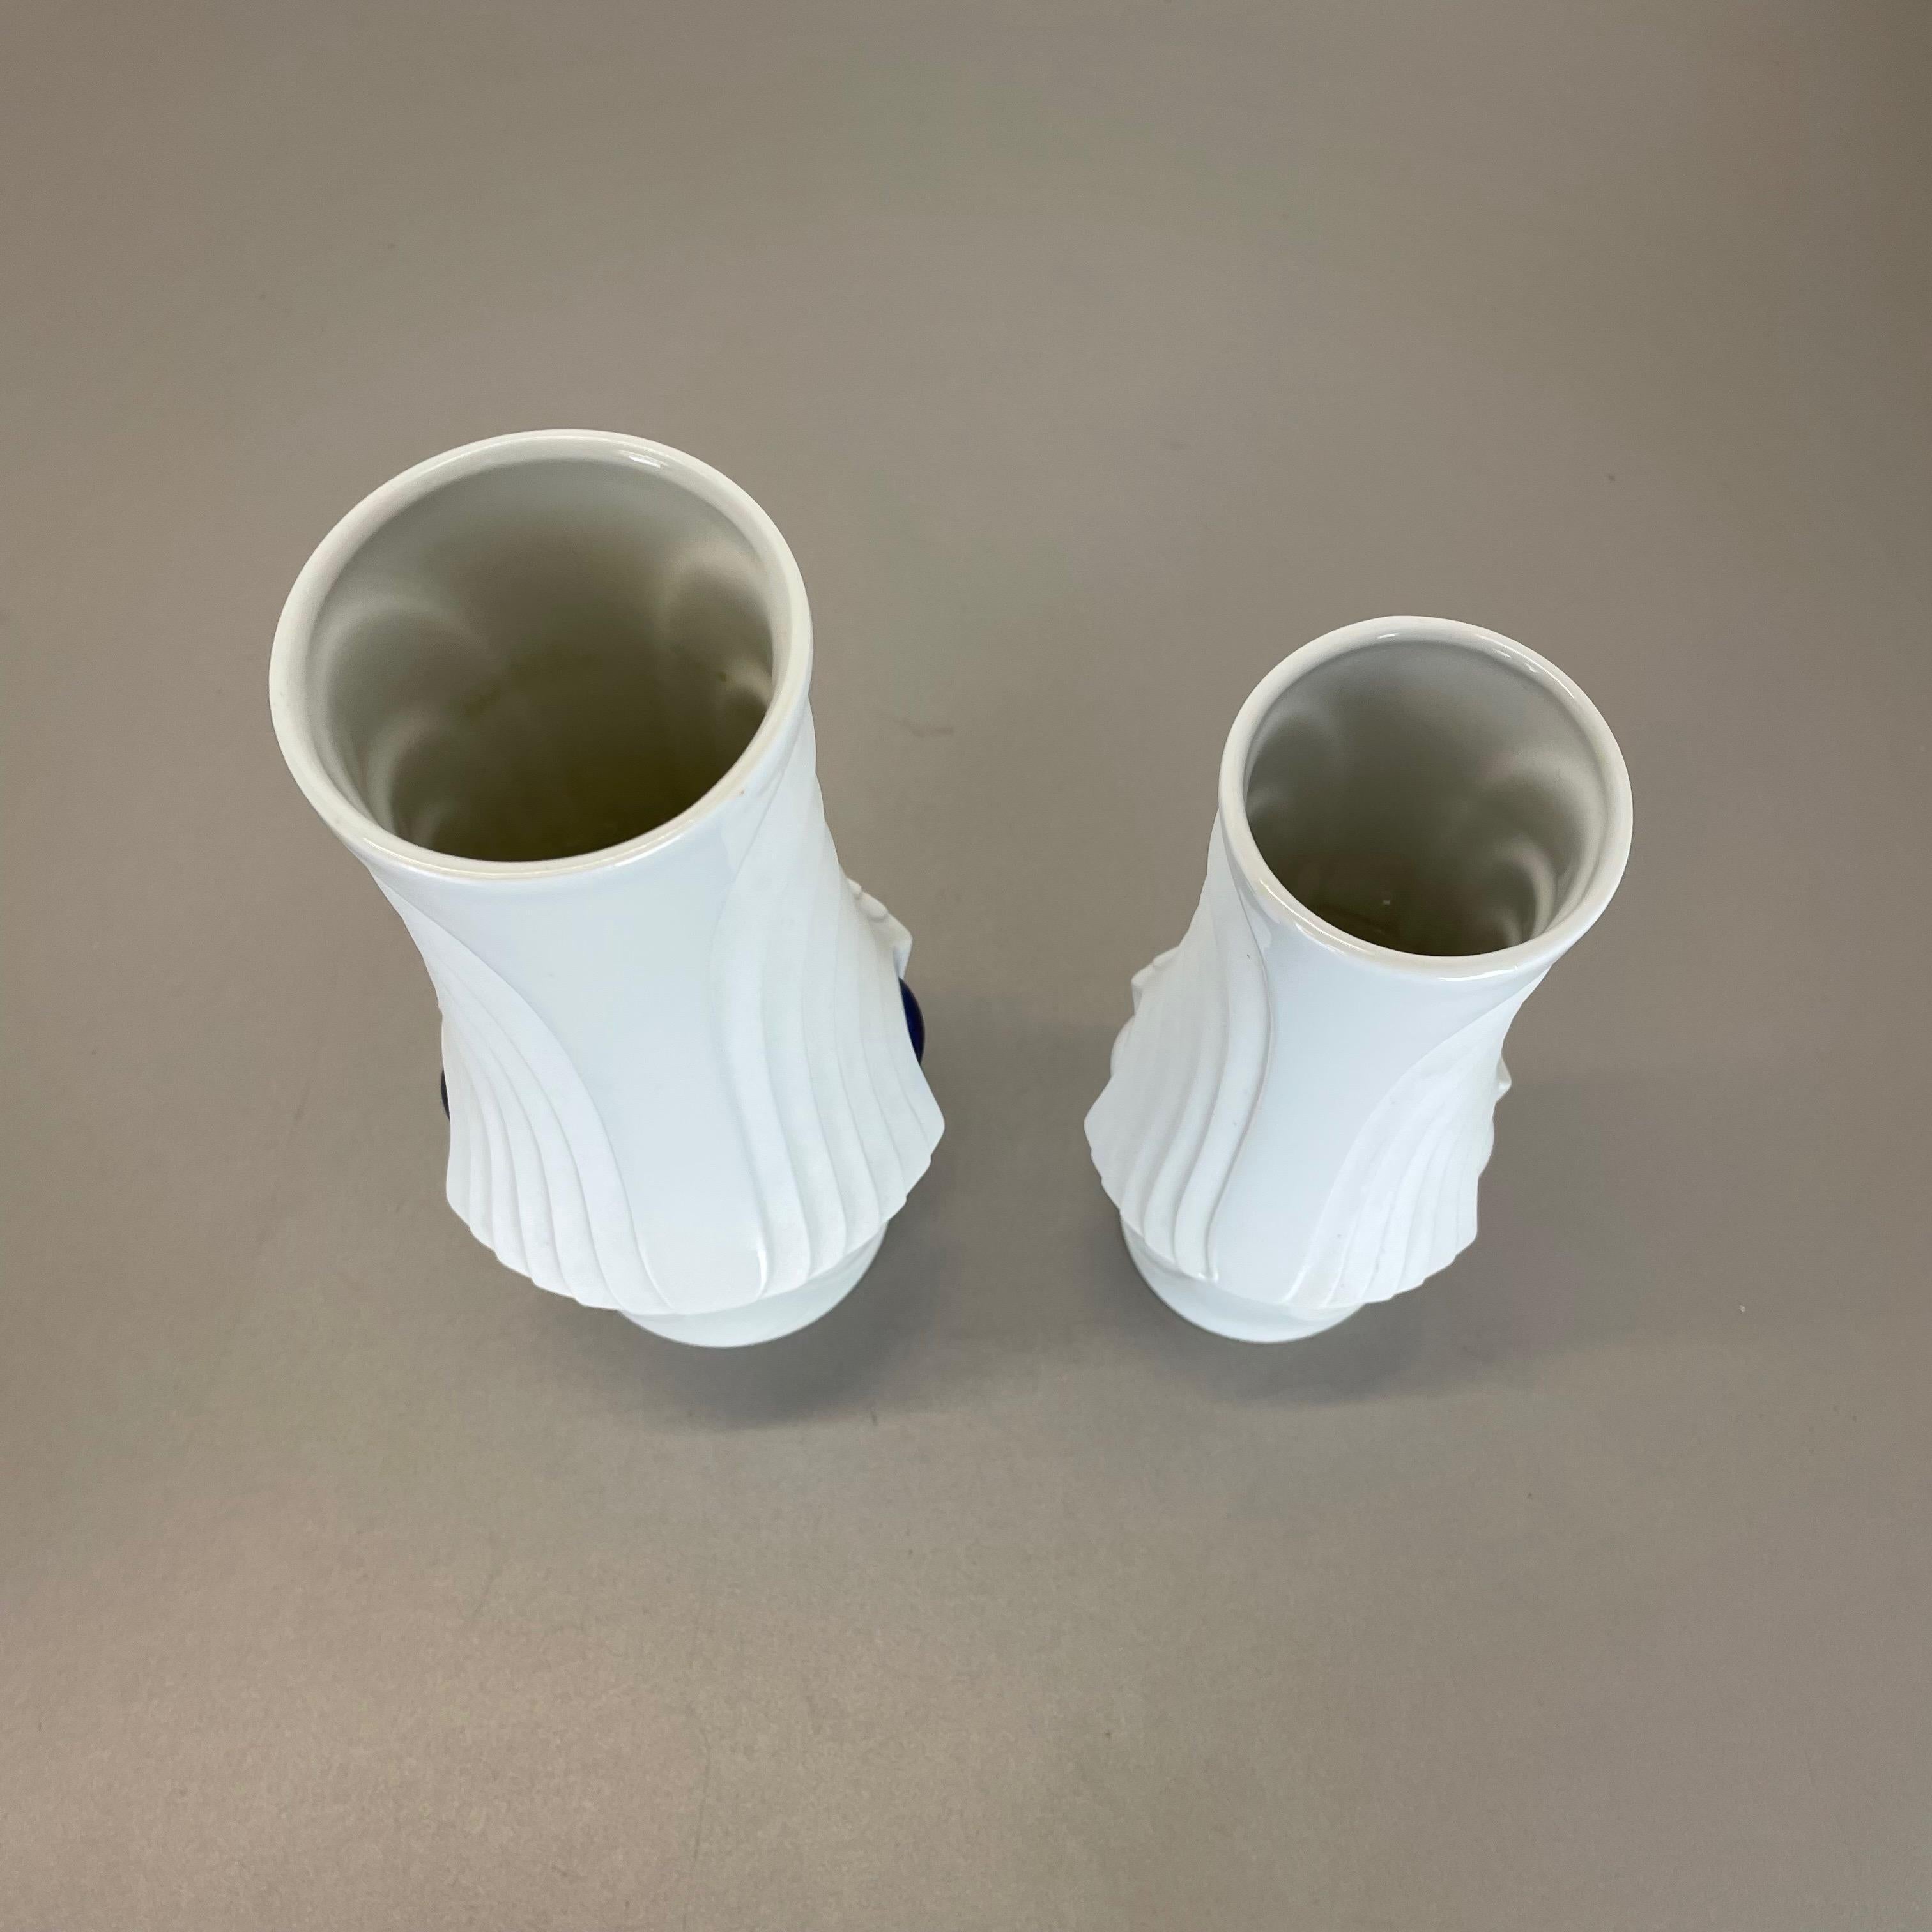 Set of 2 Original Porcelain Op Art Vase Made by Royal Bavaria KPM Germany, 1970s For Sale 8